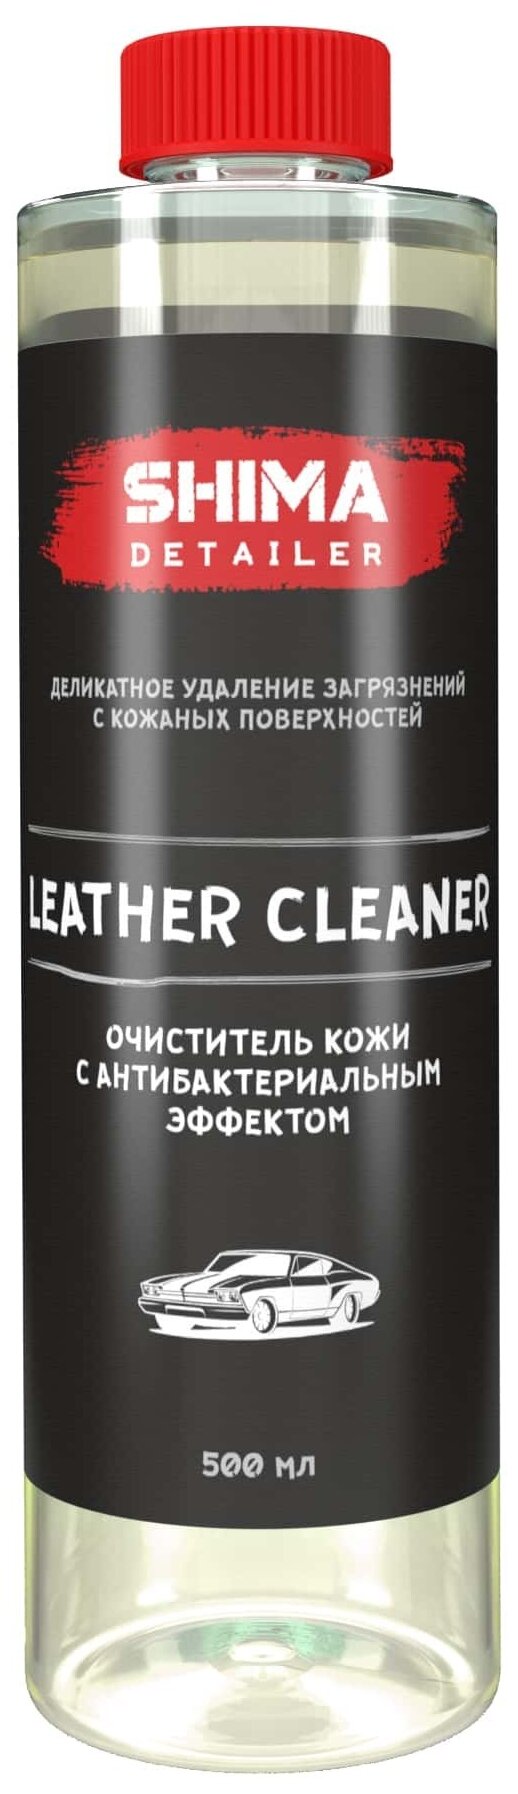 Очиститель кожи SHIMA DETAILER с антибактериальным эффектом LATHER CLEANER 500 мл.